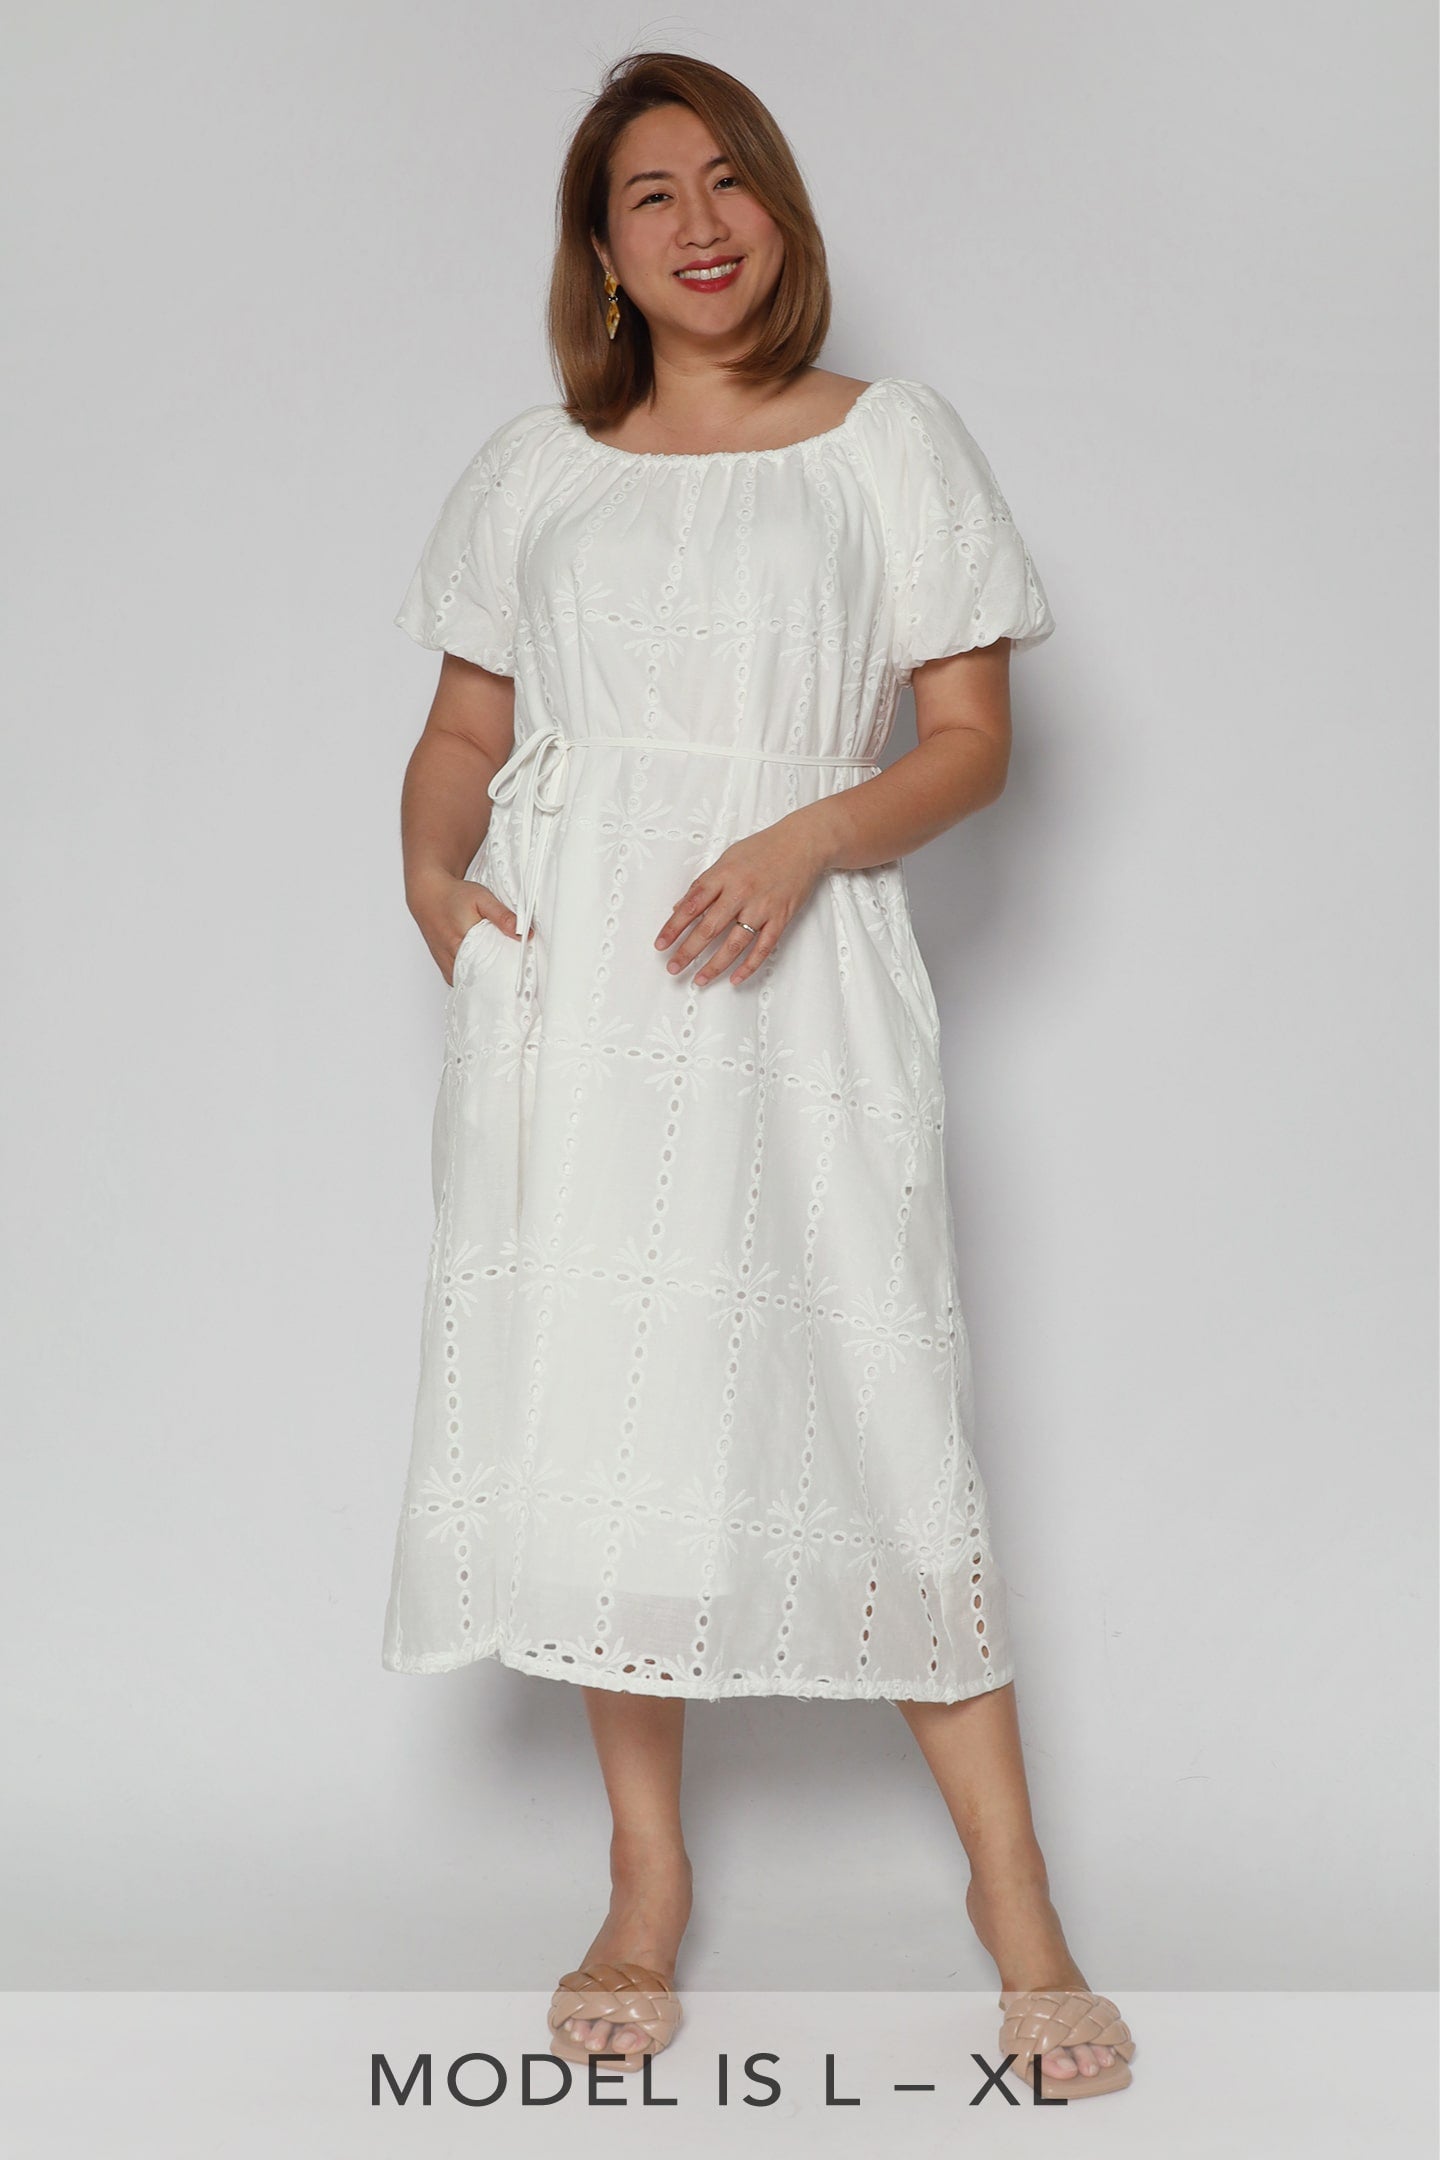 Anakin Dress in White Crochet